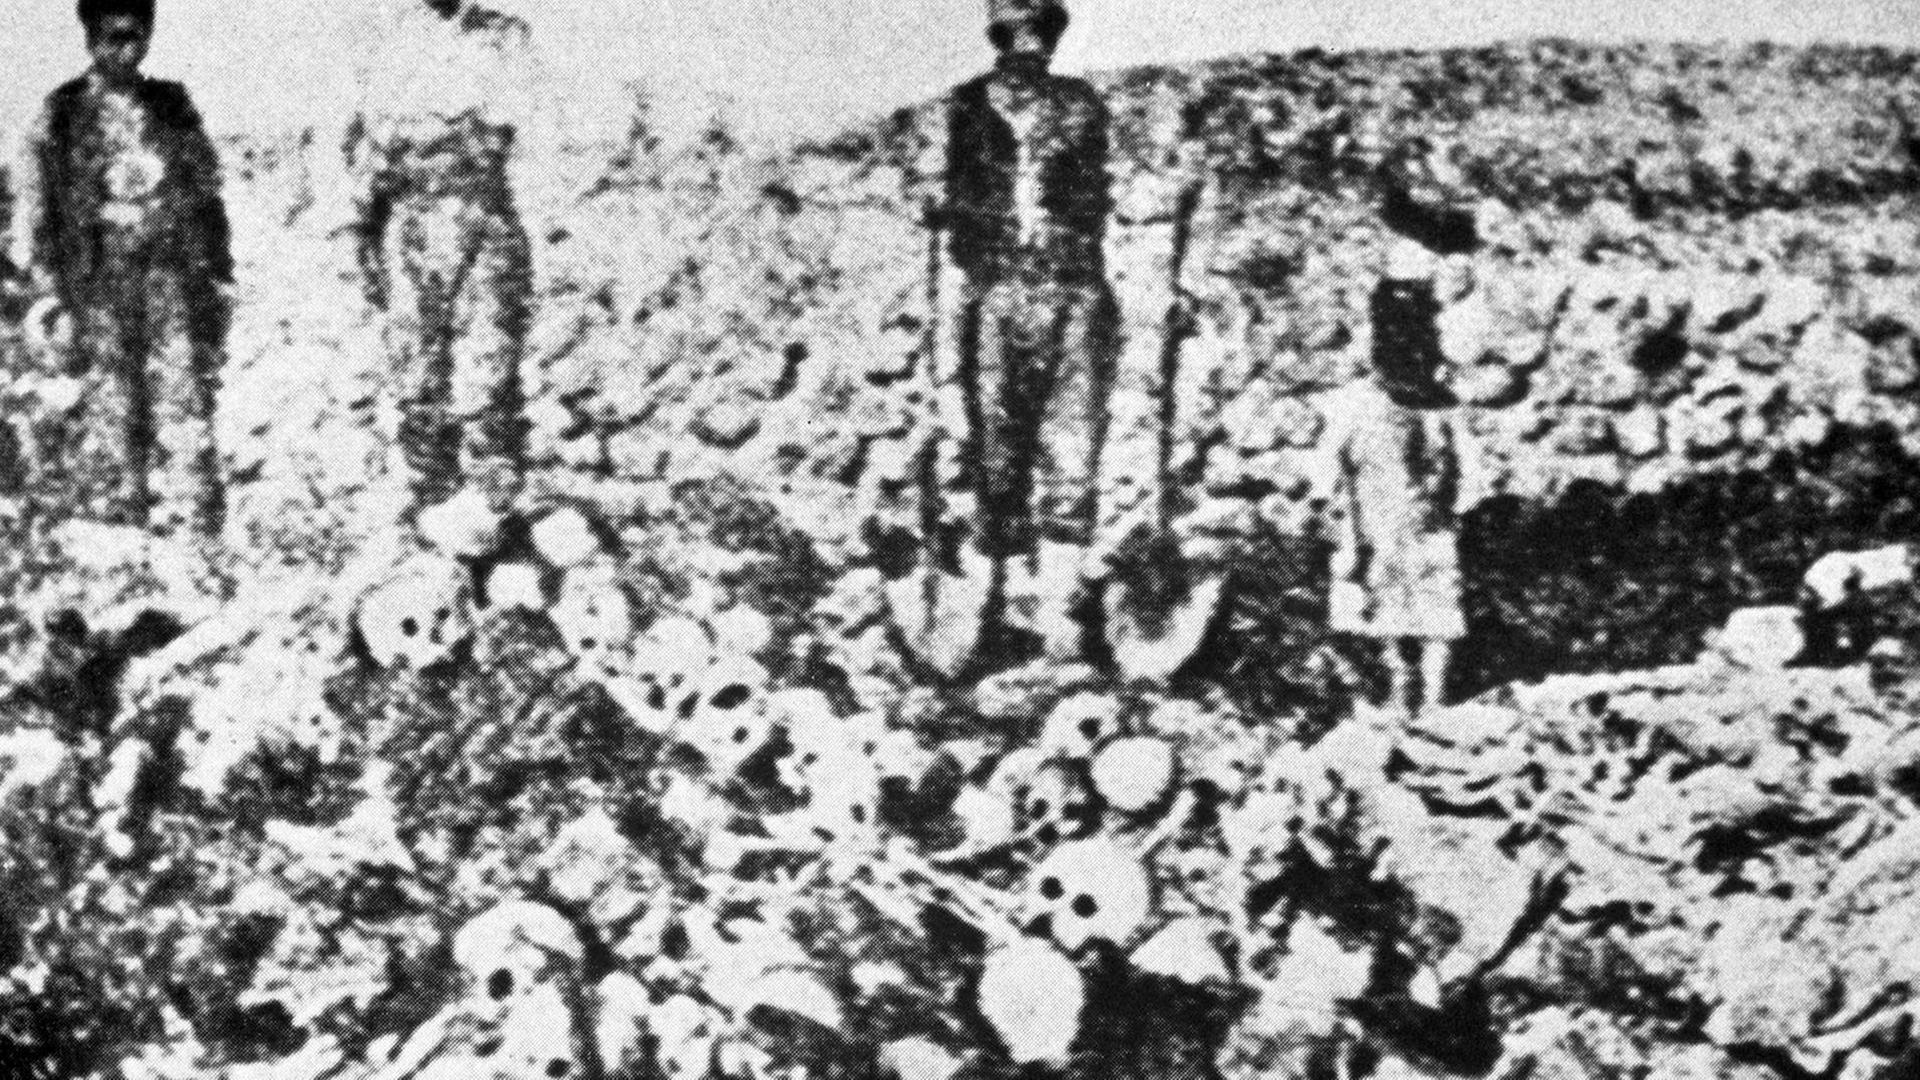 Massengrab mit den Leichen getöteter Armenier. Rund 1,5 Millionen Armenier sind in den Jahren 1915 und 1916 bei den Massenmorden und Deportationen durch die Türken ums Leben gekommen. Als Folge flüchteten die Armenier aus dem türkischen Teil Armeniens in den russischen Teil sowie in andere Länder.